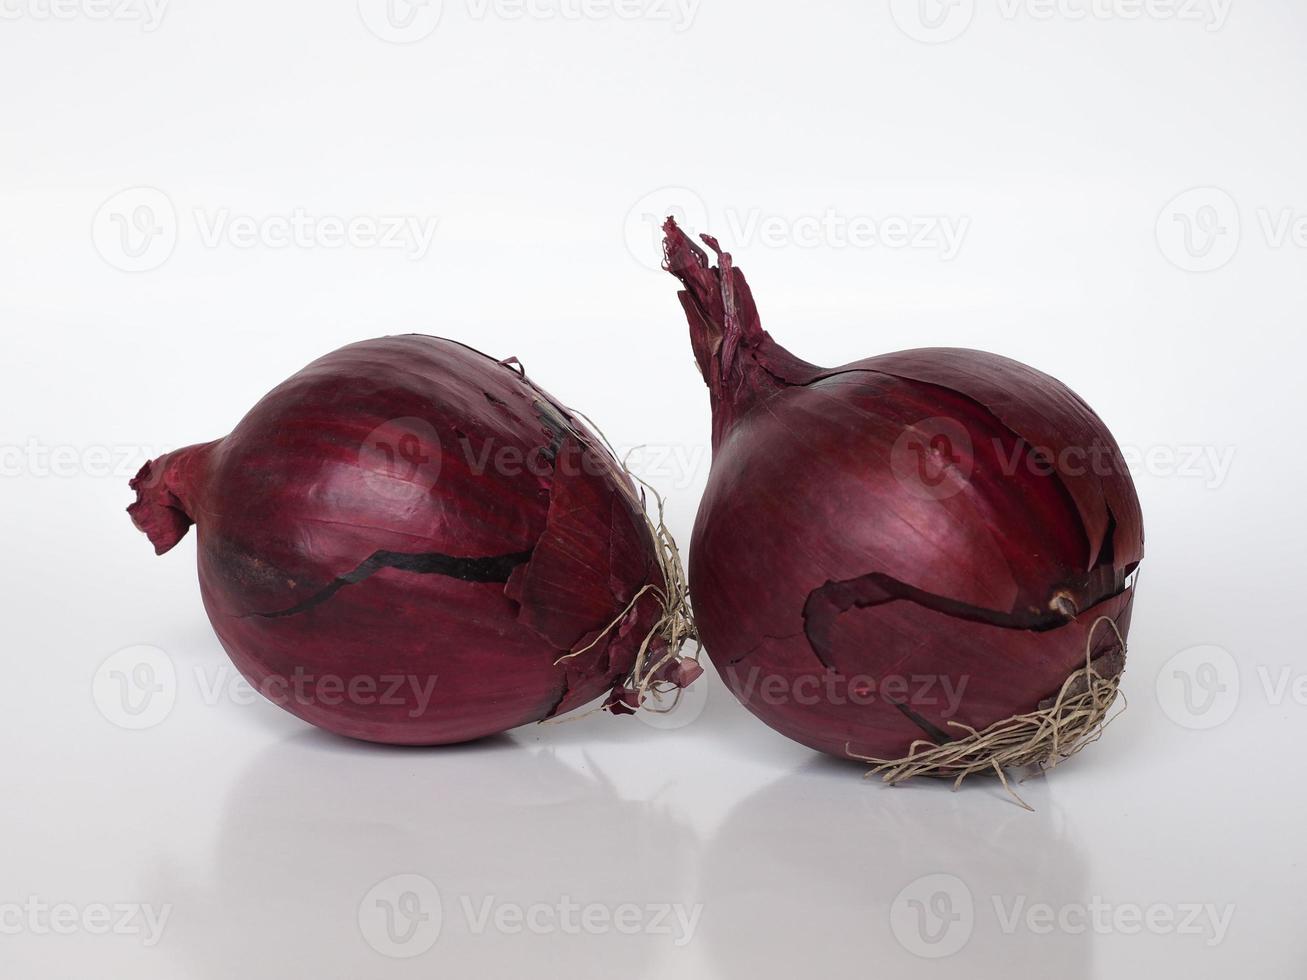 légumes oignons rouges sur fond blanc photo